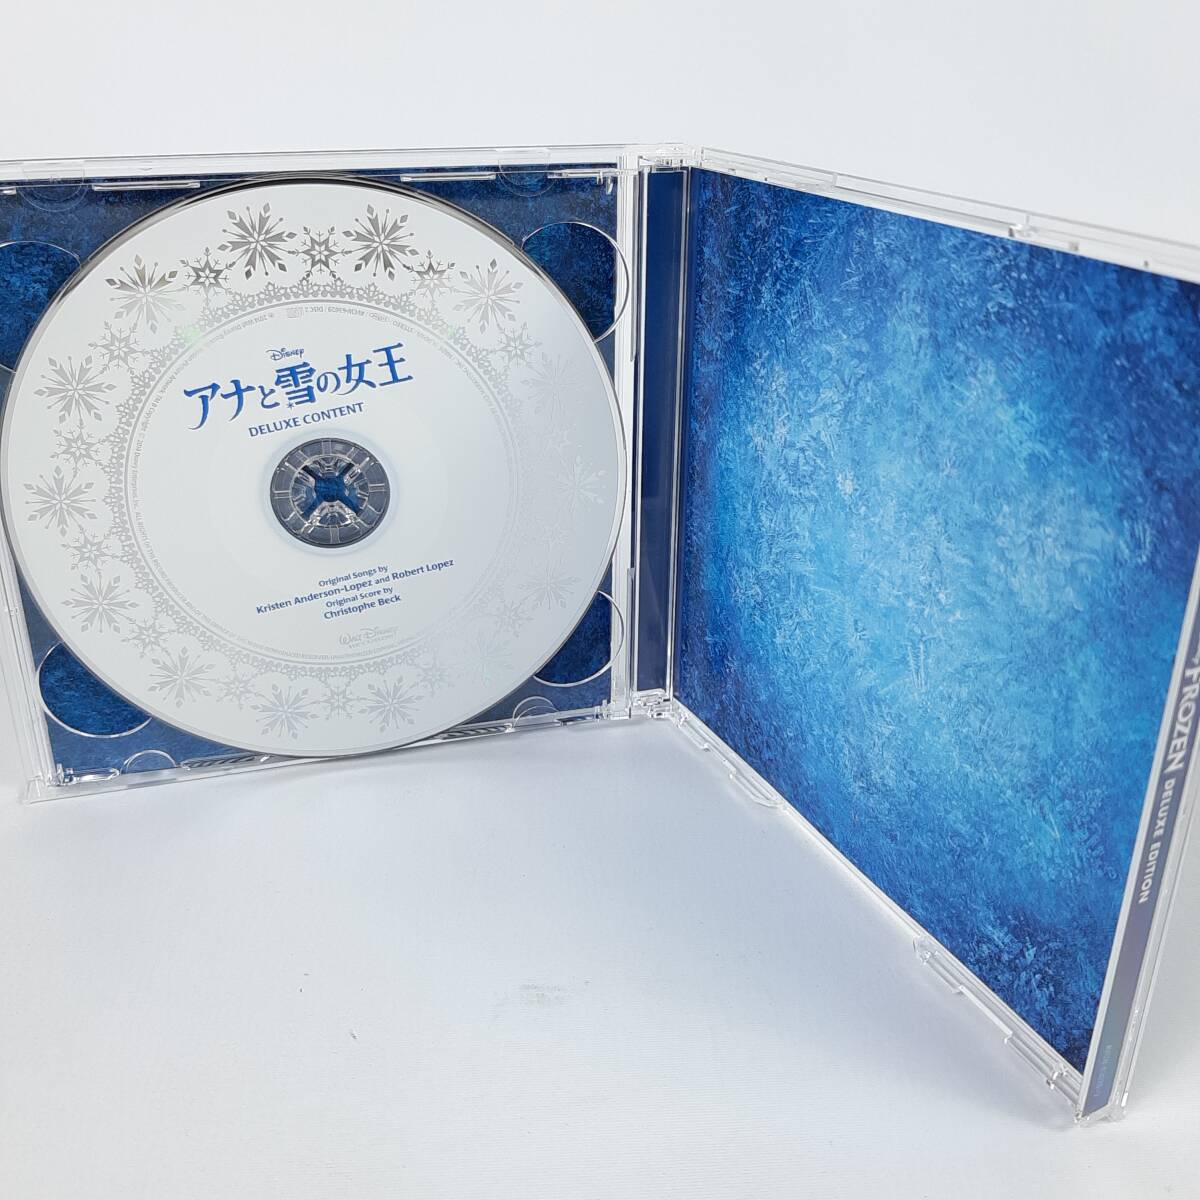 「アナと雪の女王」 オリジナル・サウンドトラックーデラックス・エディションー[初回盤スリーブケース付]の画像4